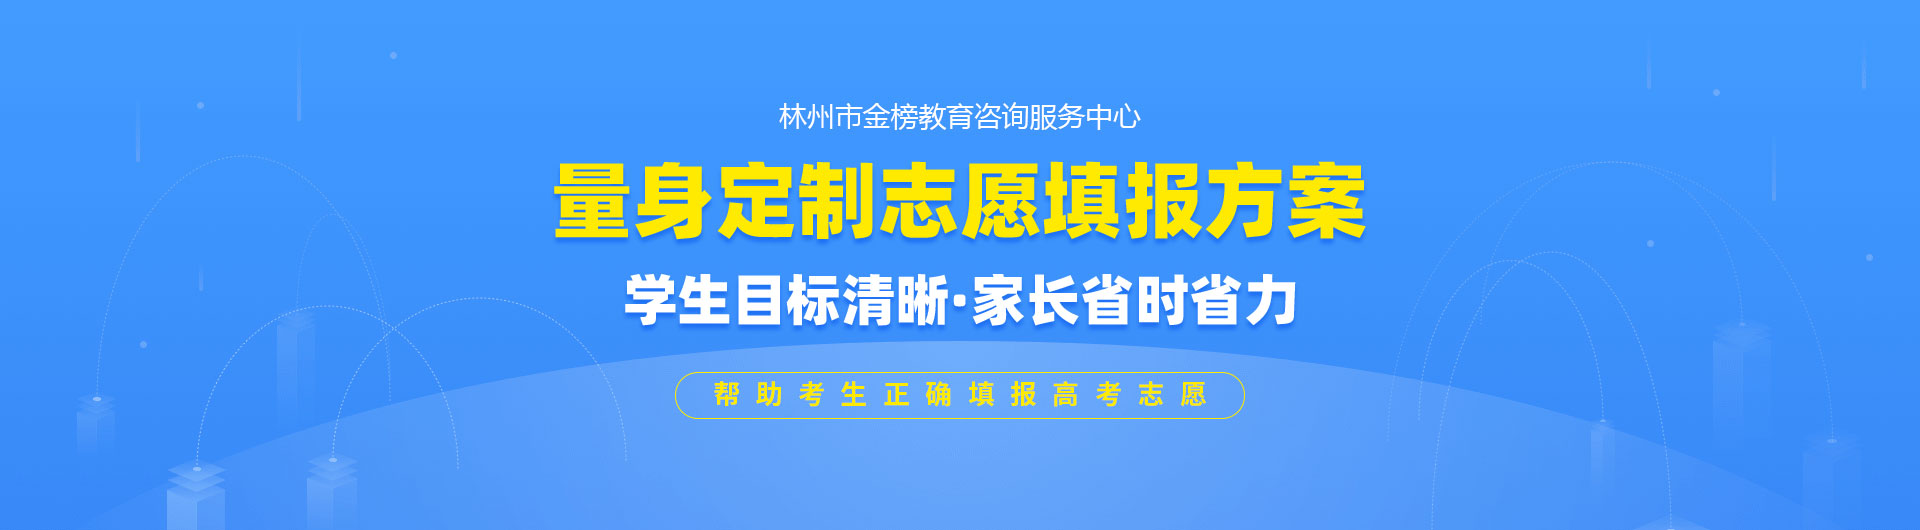 林州市金榜教育咨询服务中心_PC